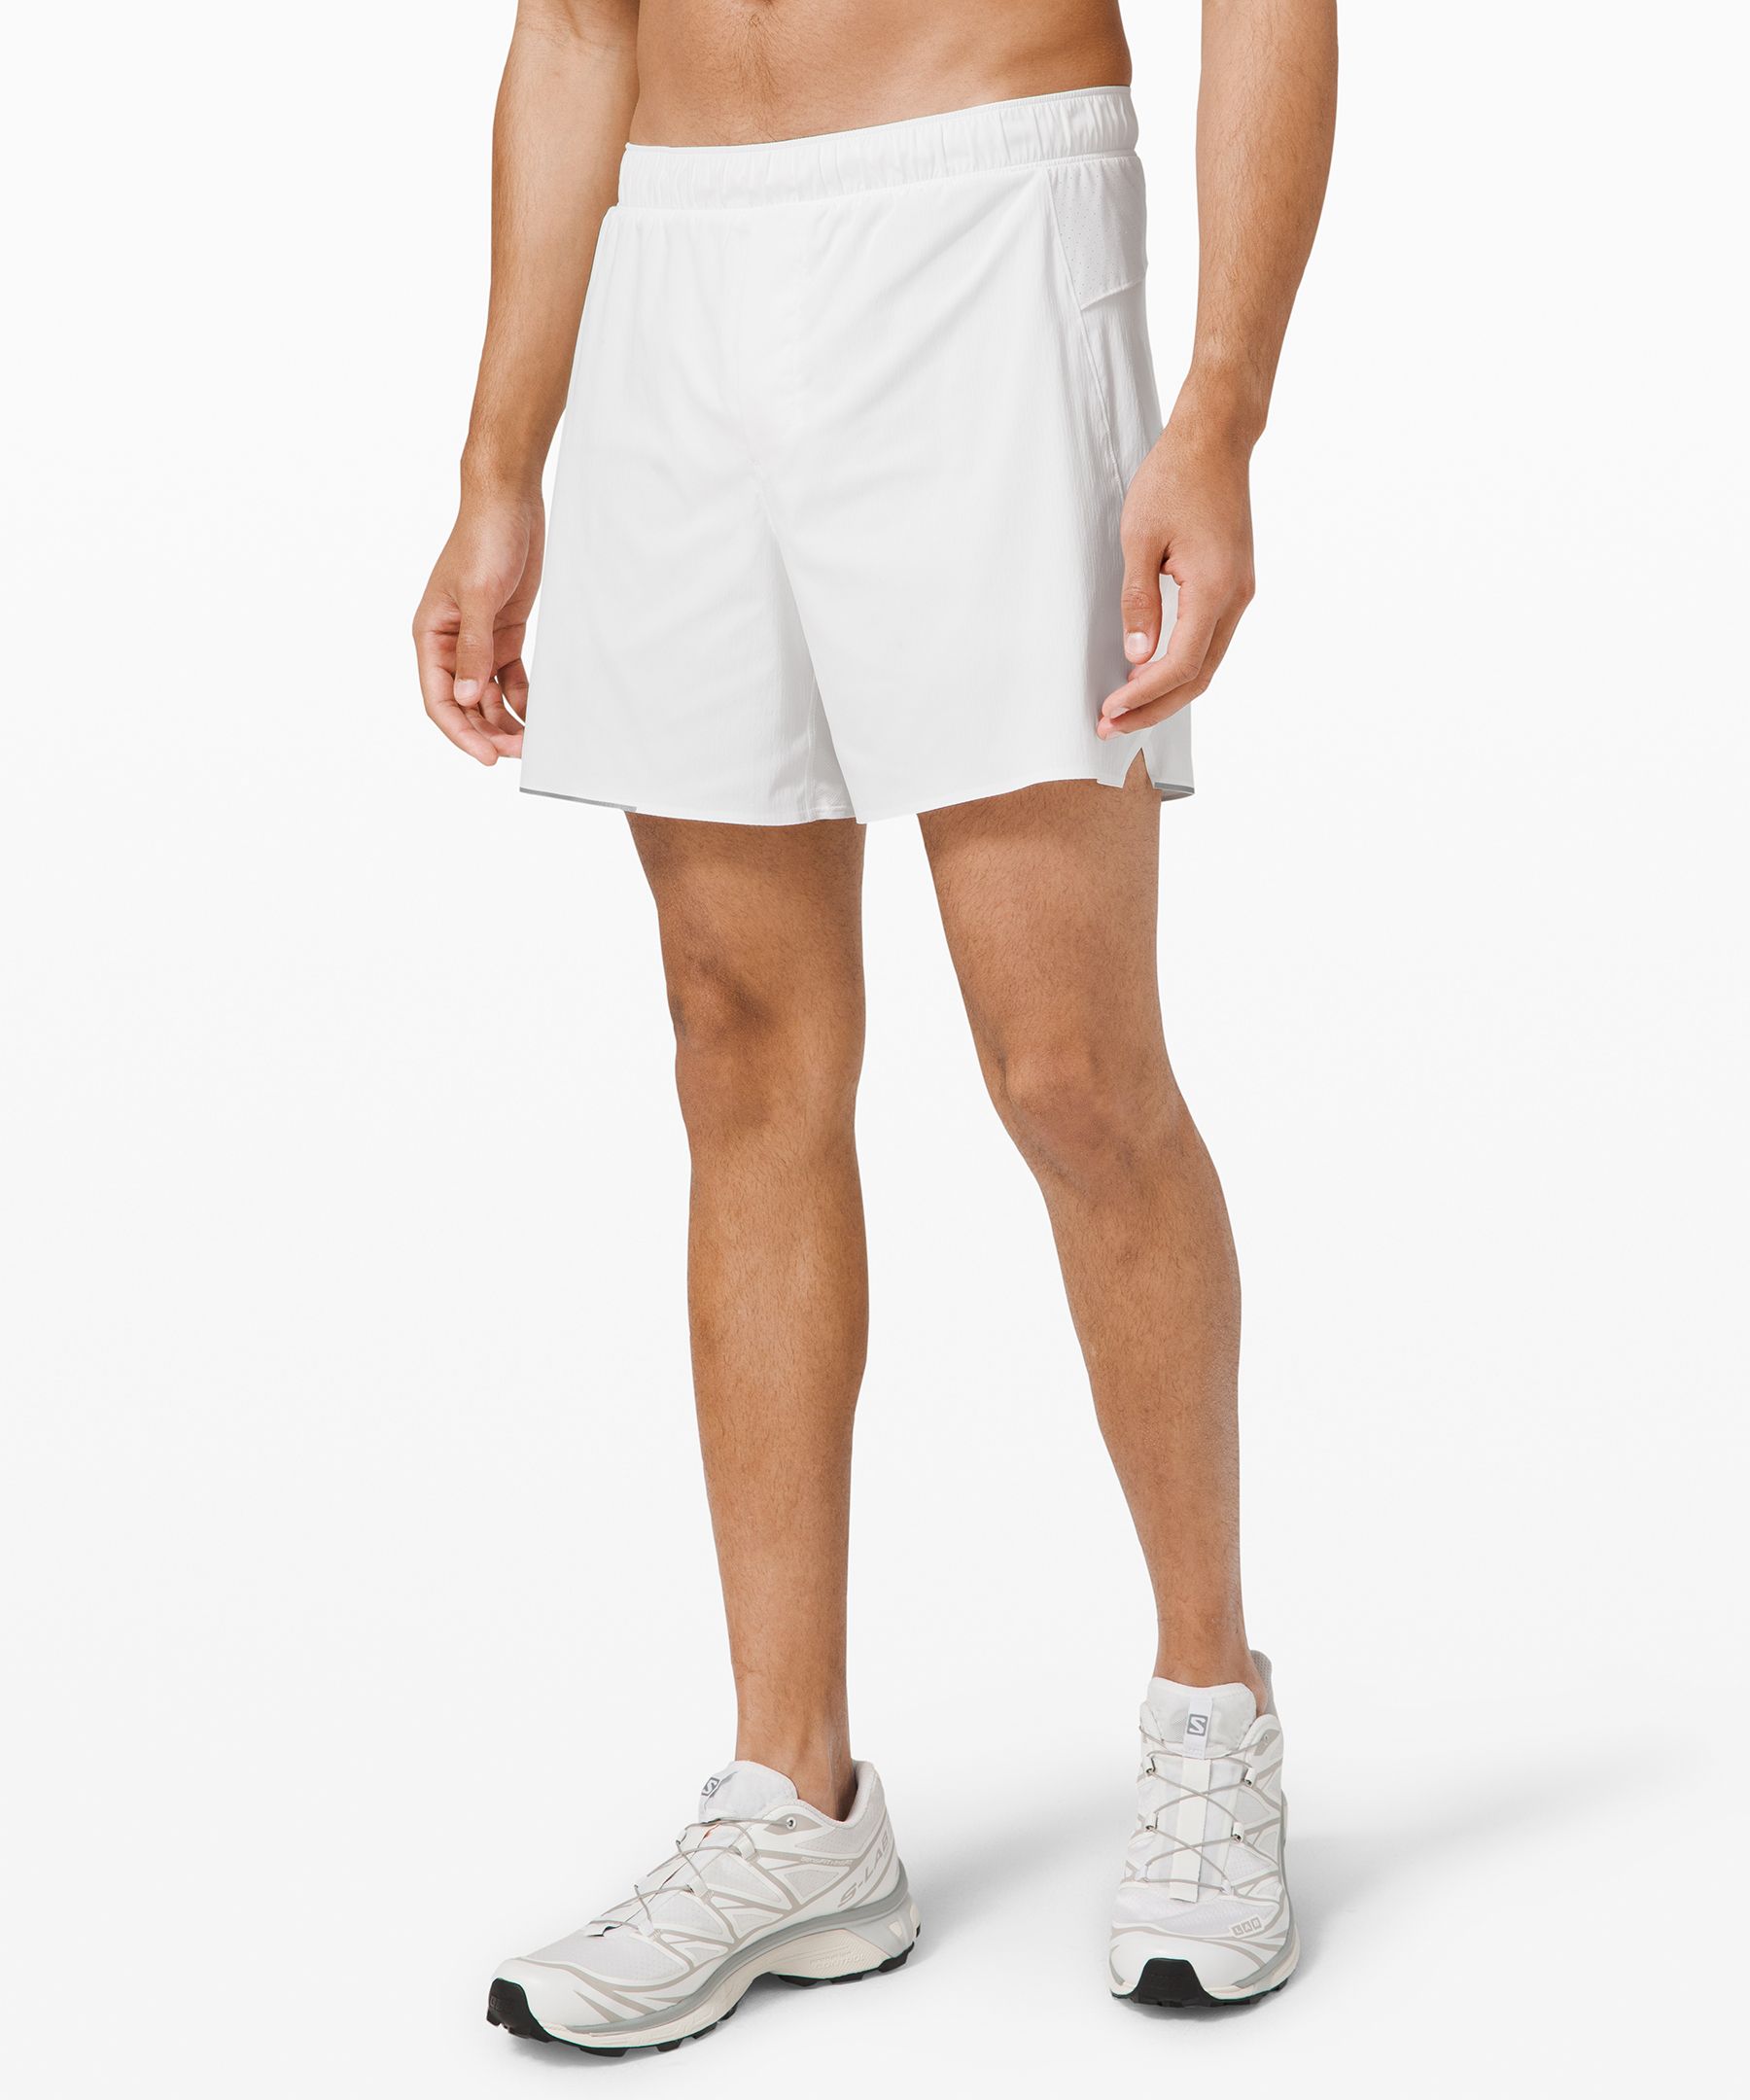 Lululemon Surge Lined Shorts 6" In White